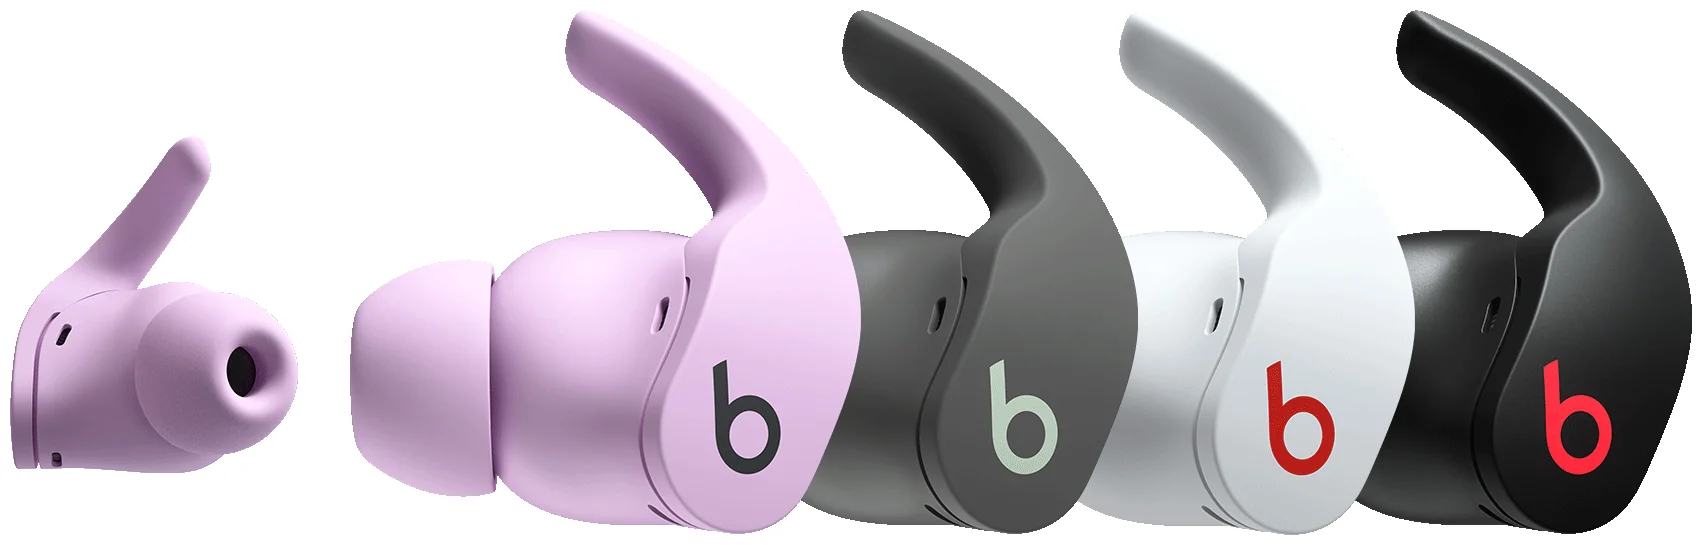 Beats Fit Pro будут доступны в трех новых цветовых вариантах